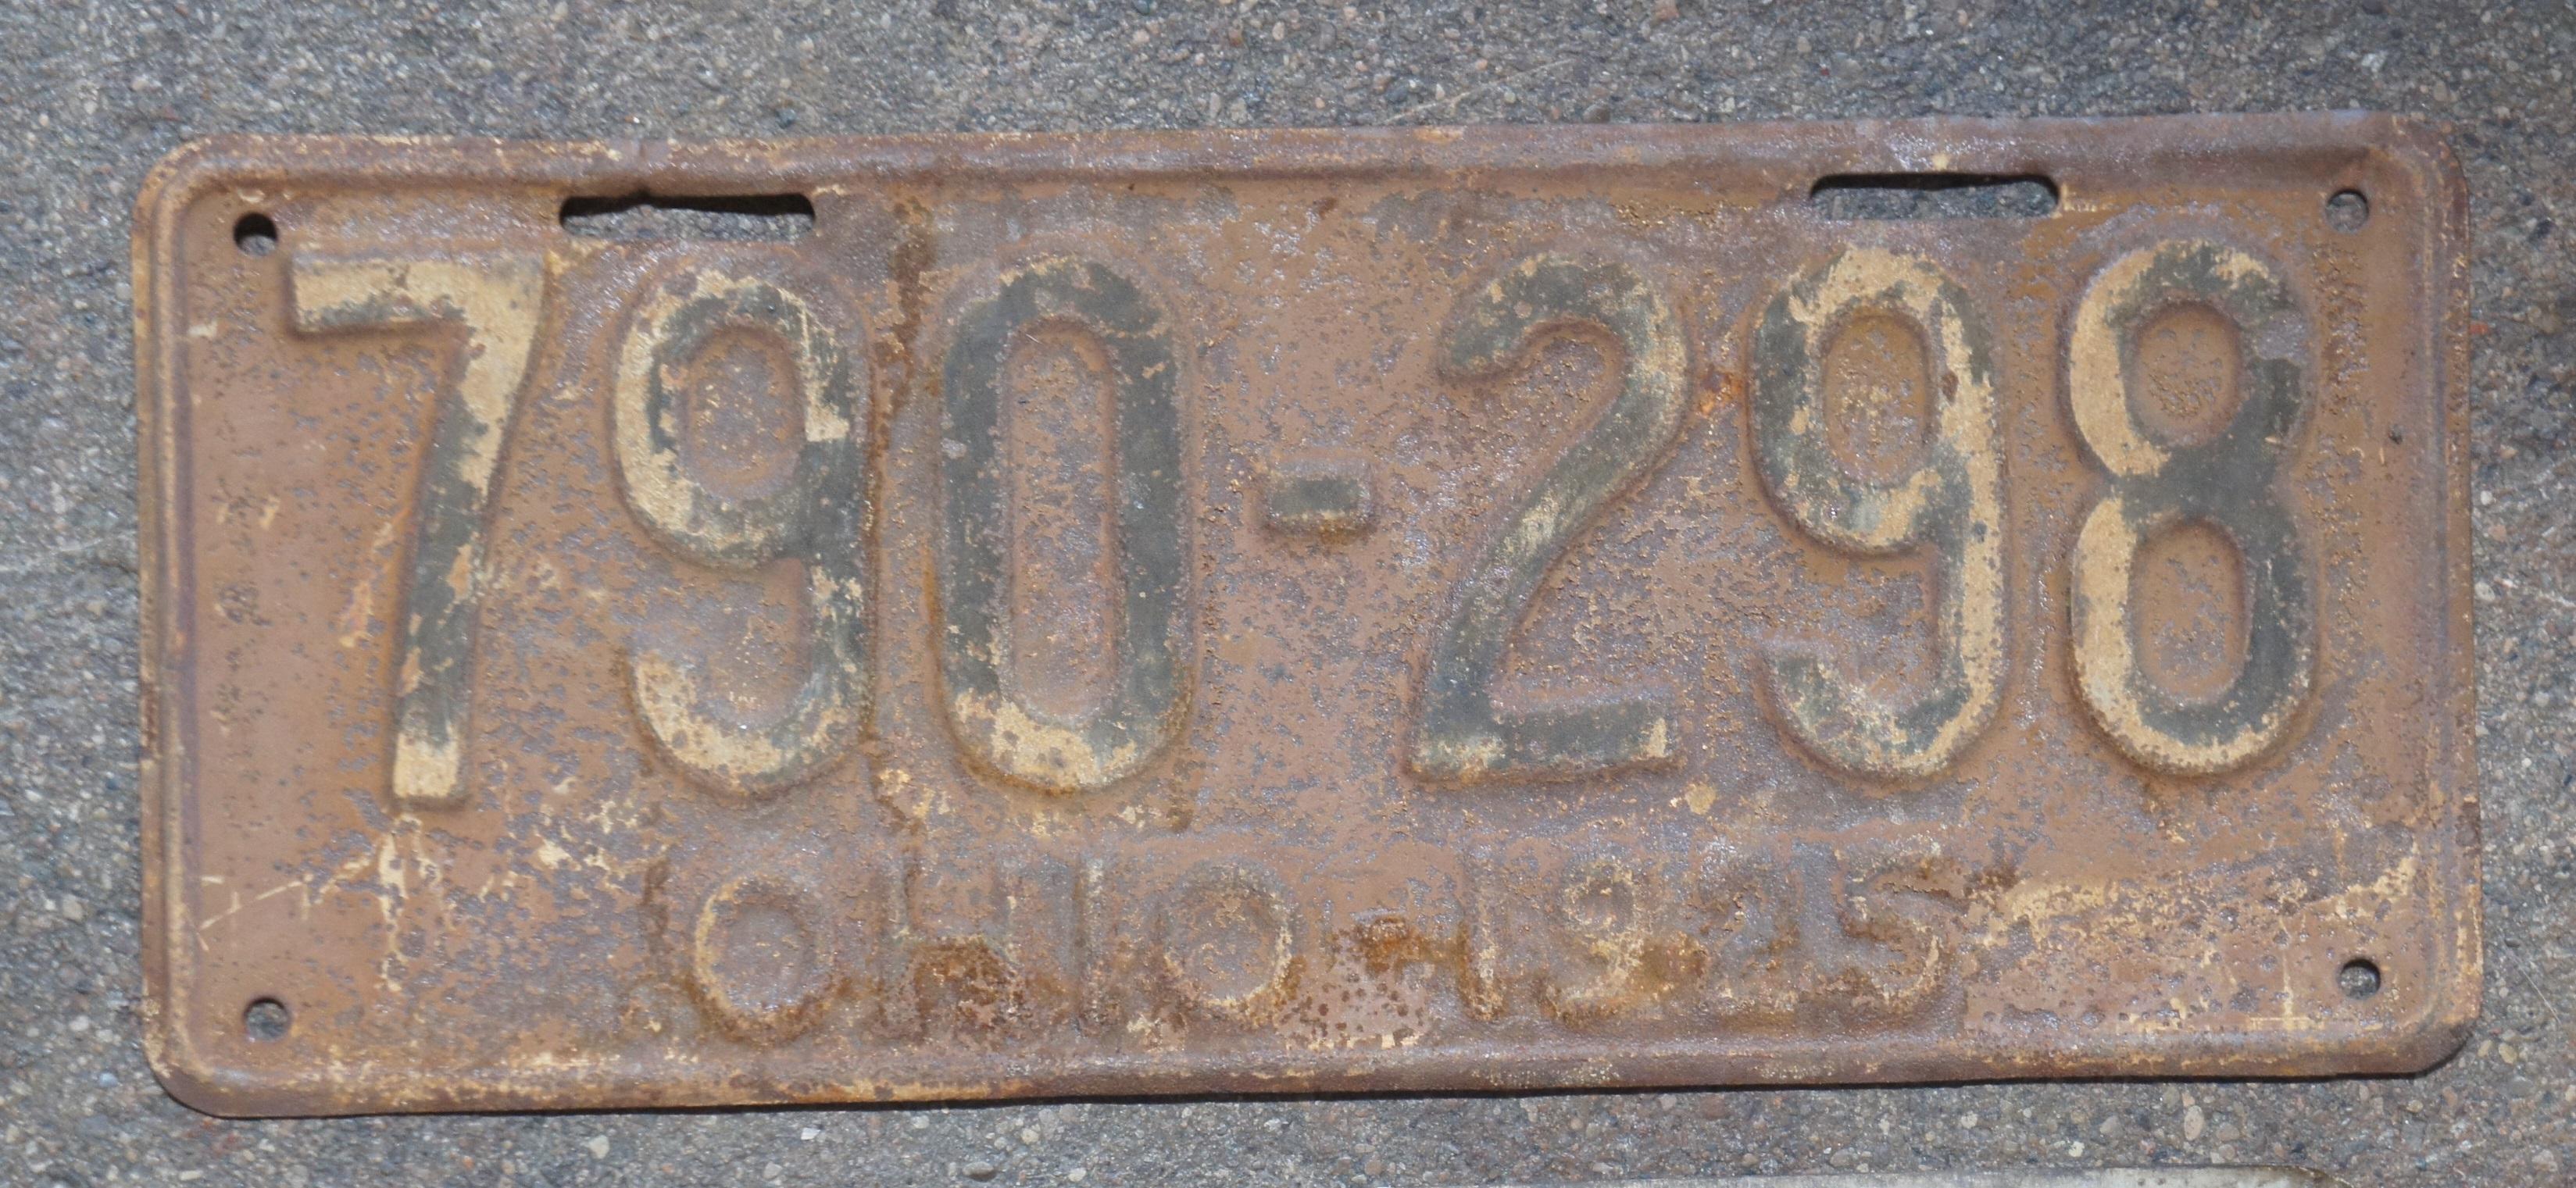 1970 ohio license plate